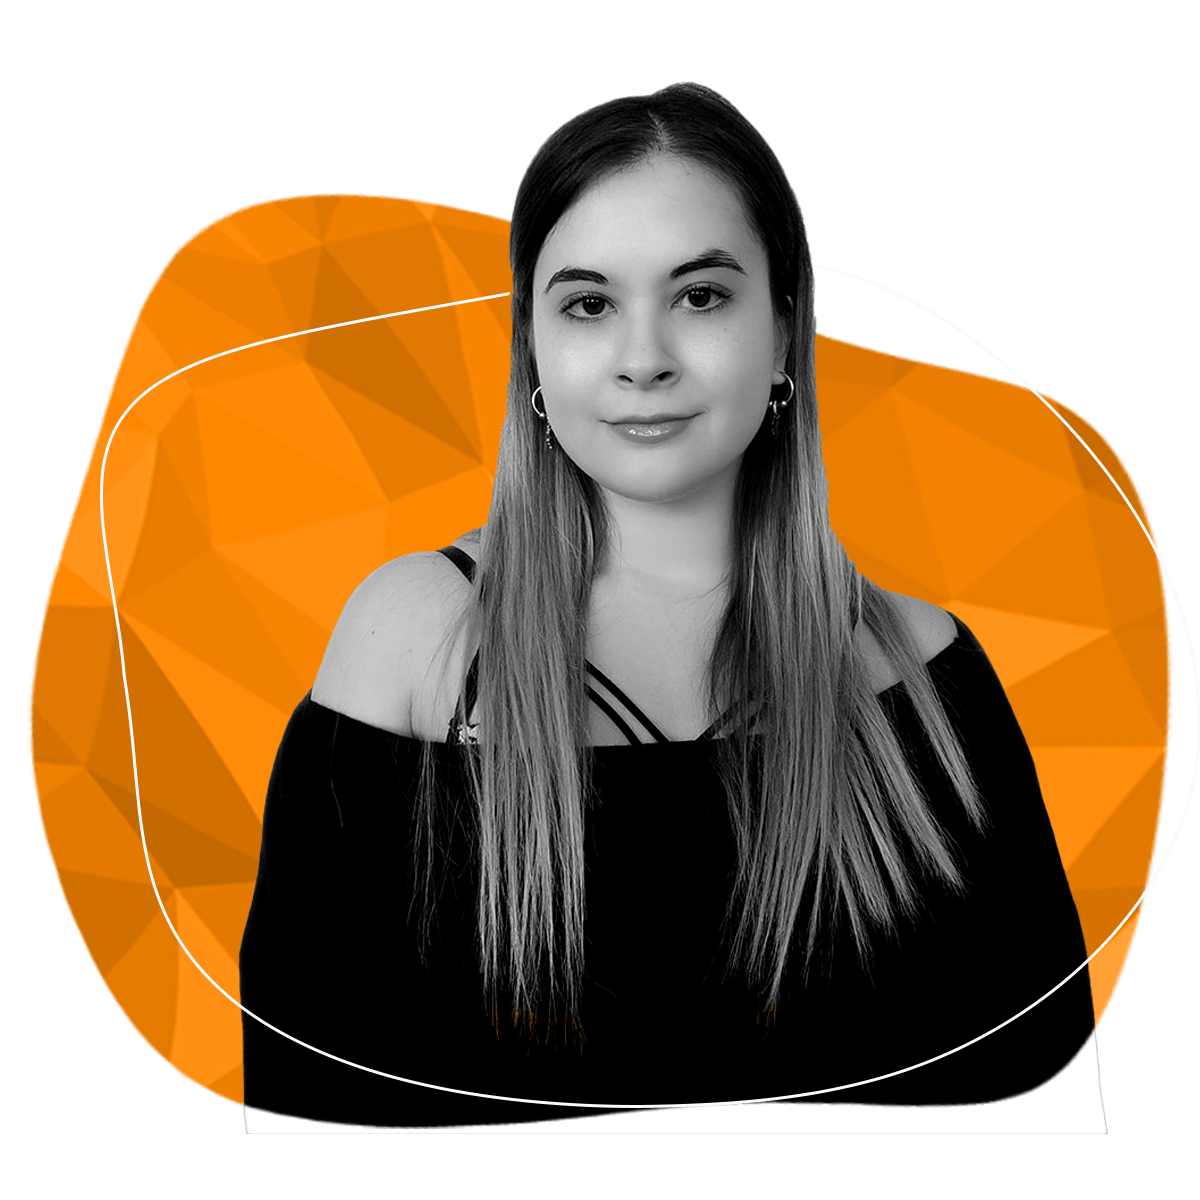 About RoT STUDIO's Marketing Specialist Pınar Çepni